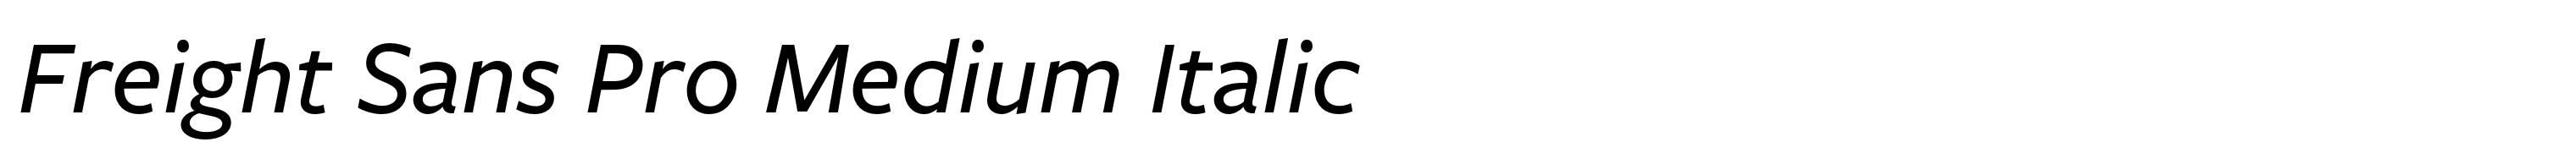 Freight Sans Pro Medium Italic